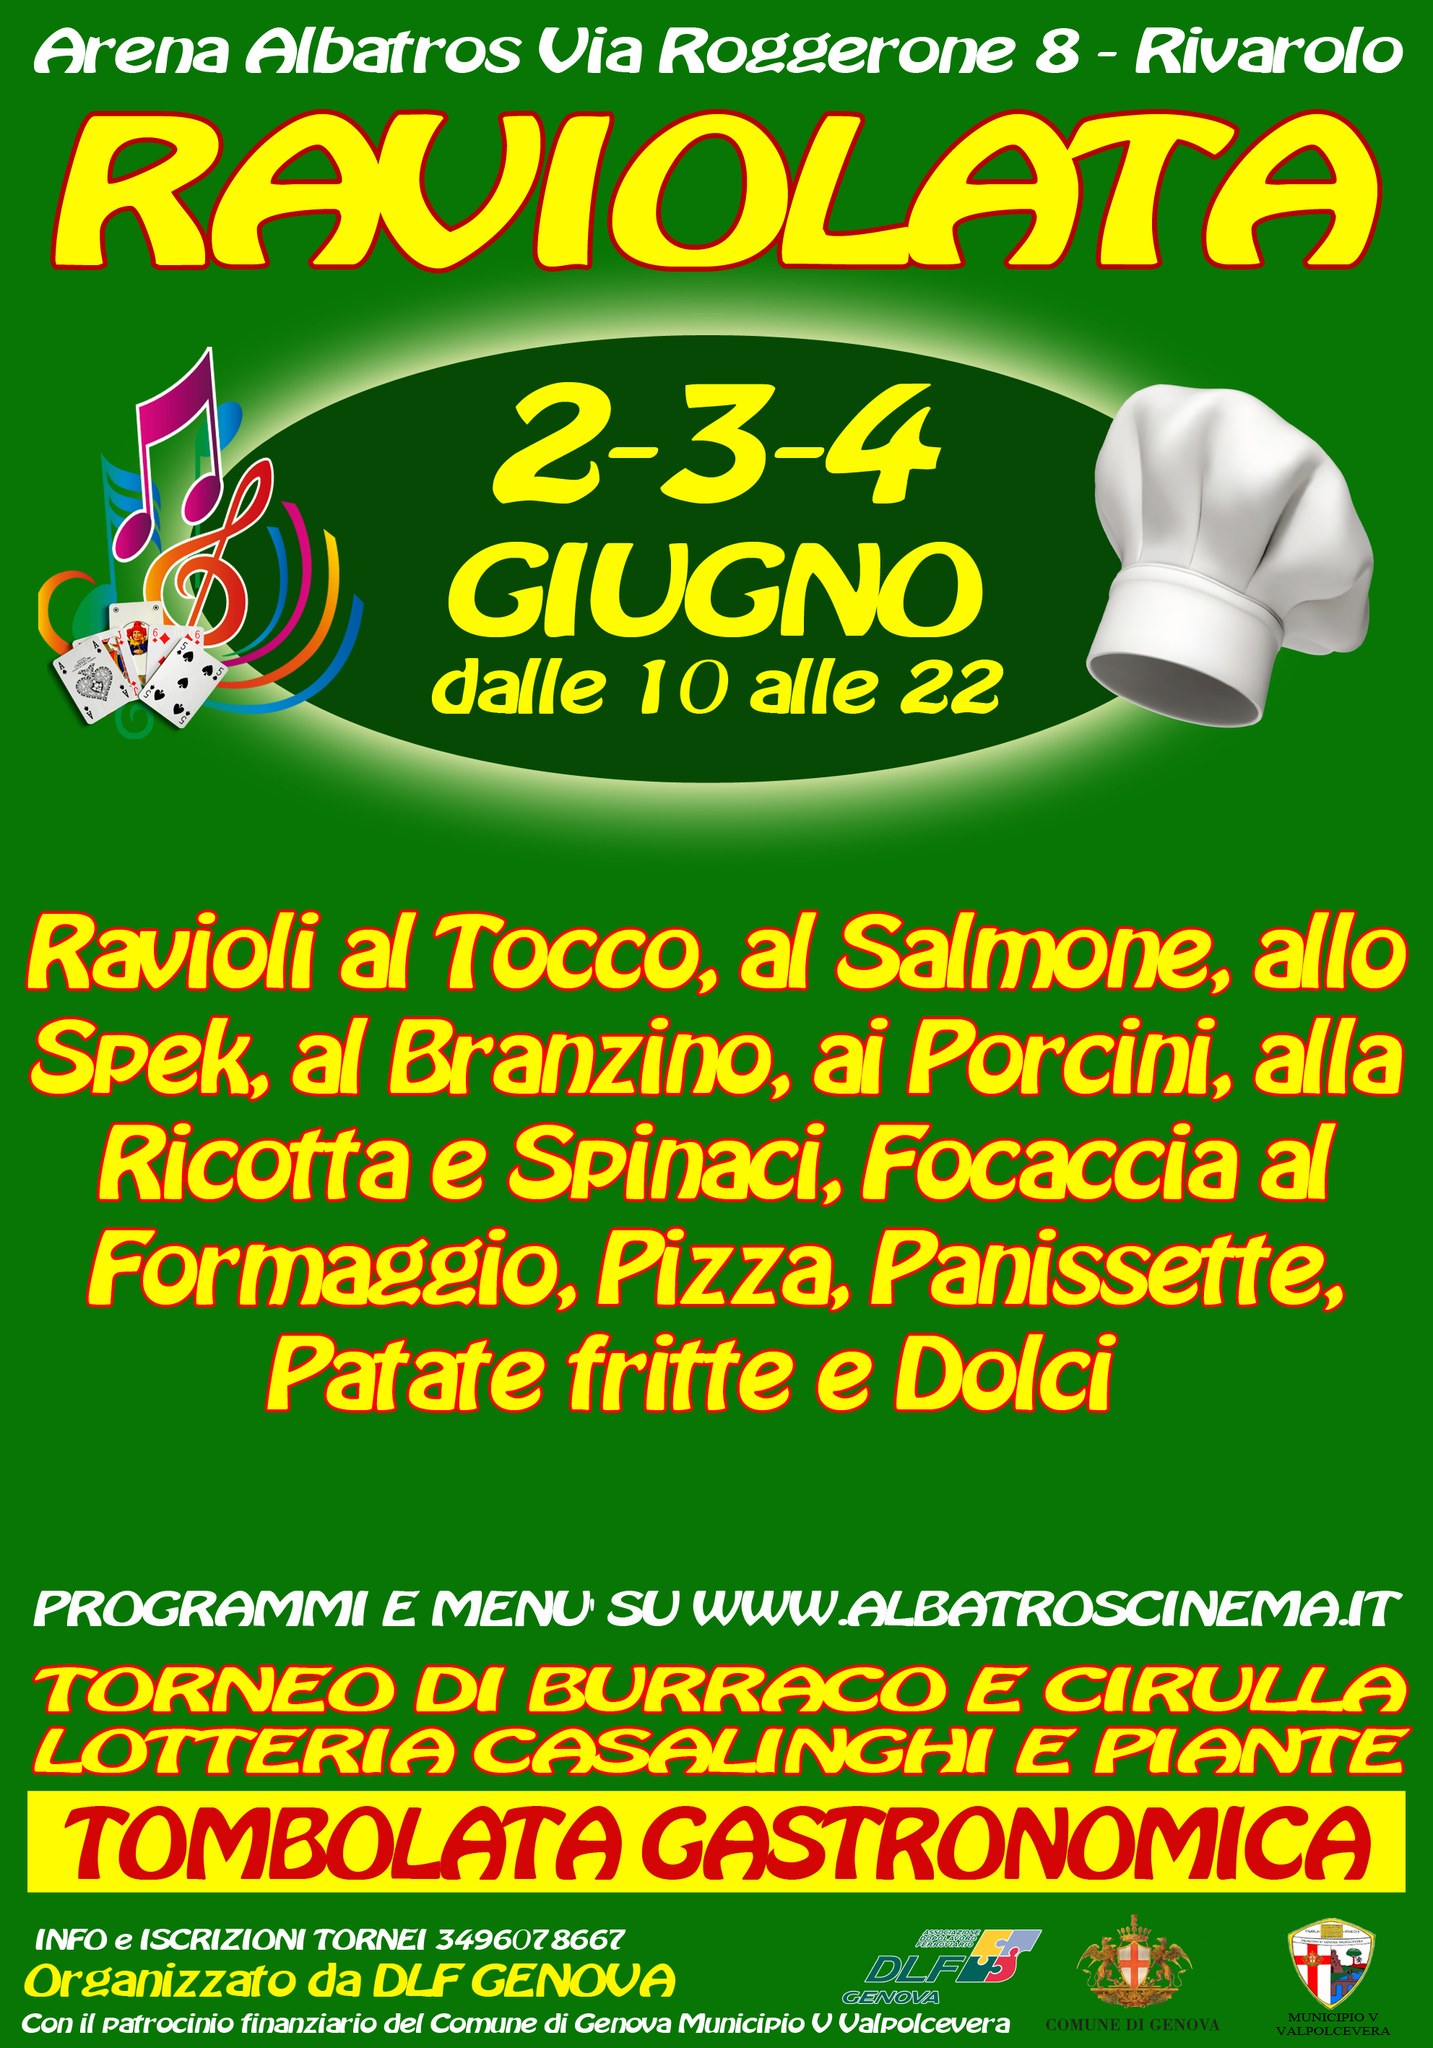 Secondo appuntamento gastronomico all'Arena Albatros di Rivarolo (via Roggerone, 8). In programma la raviolata, da venerdì 2 a domenica 4 giugno 2023, con ravioli presentati in tante varianti e condimenti.